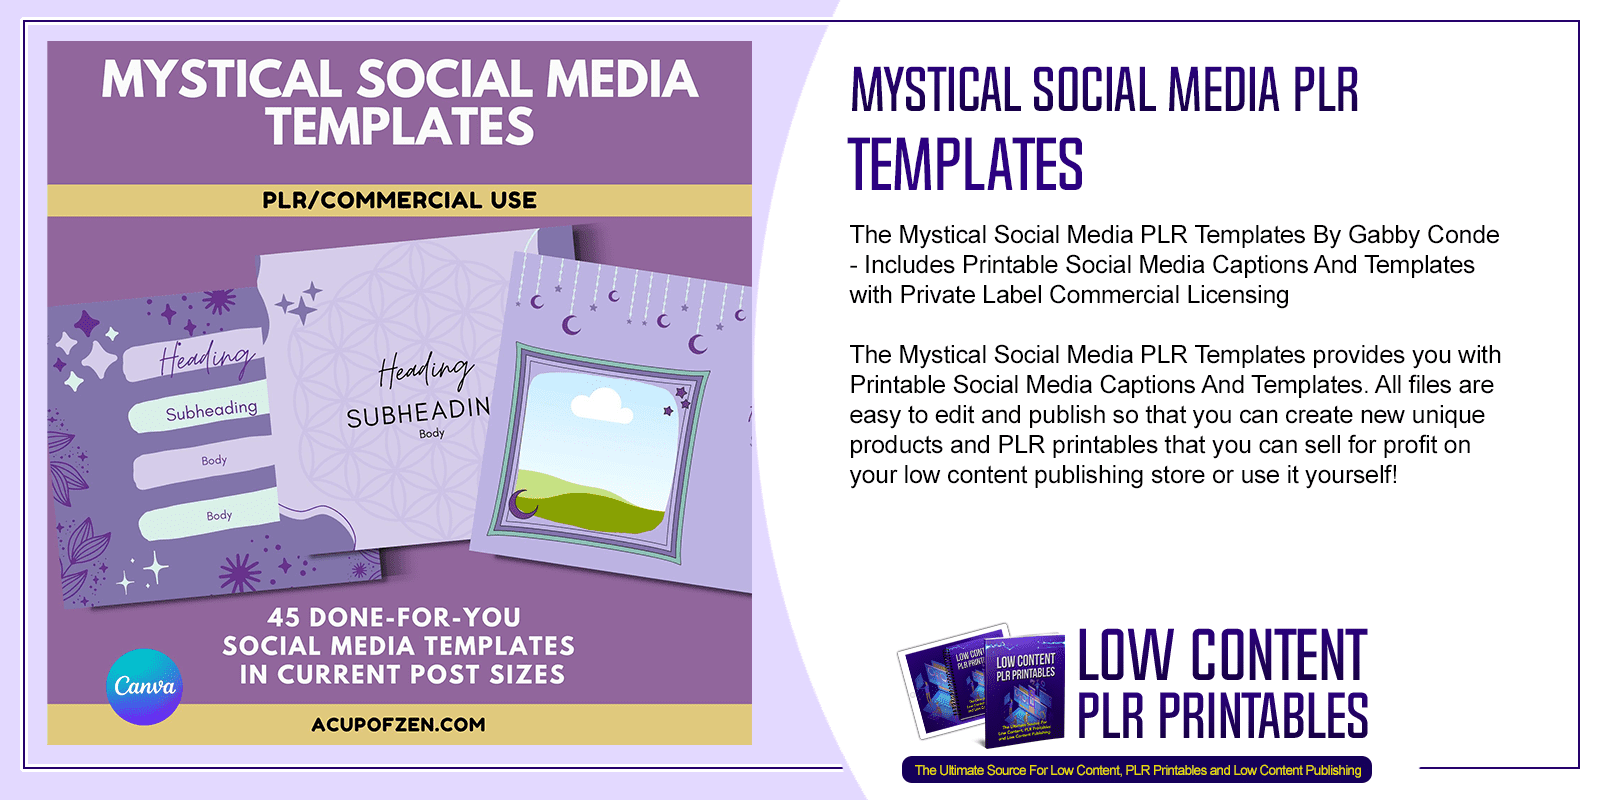 Mystical Social Media PLR Templates